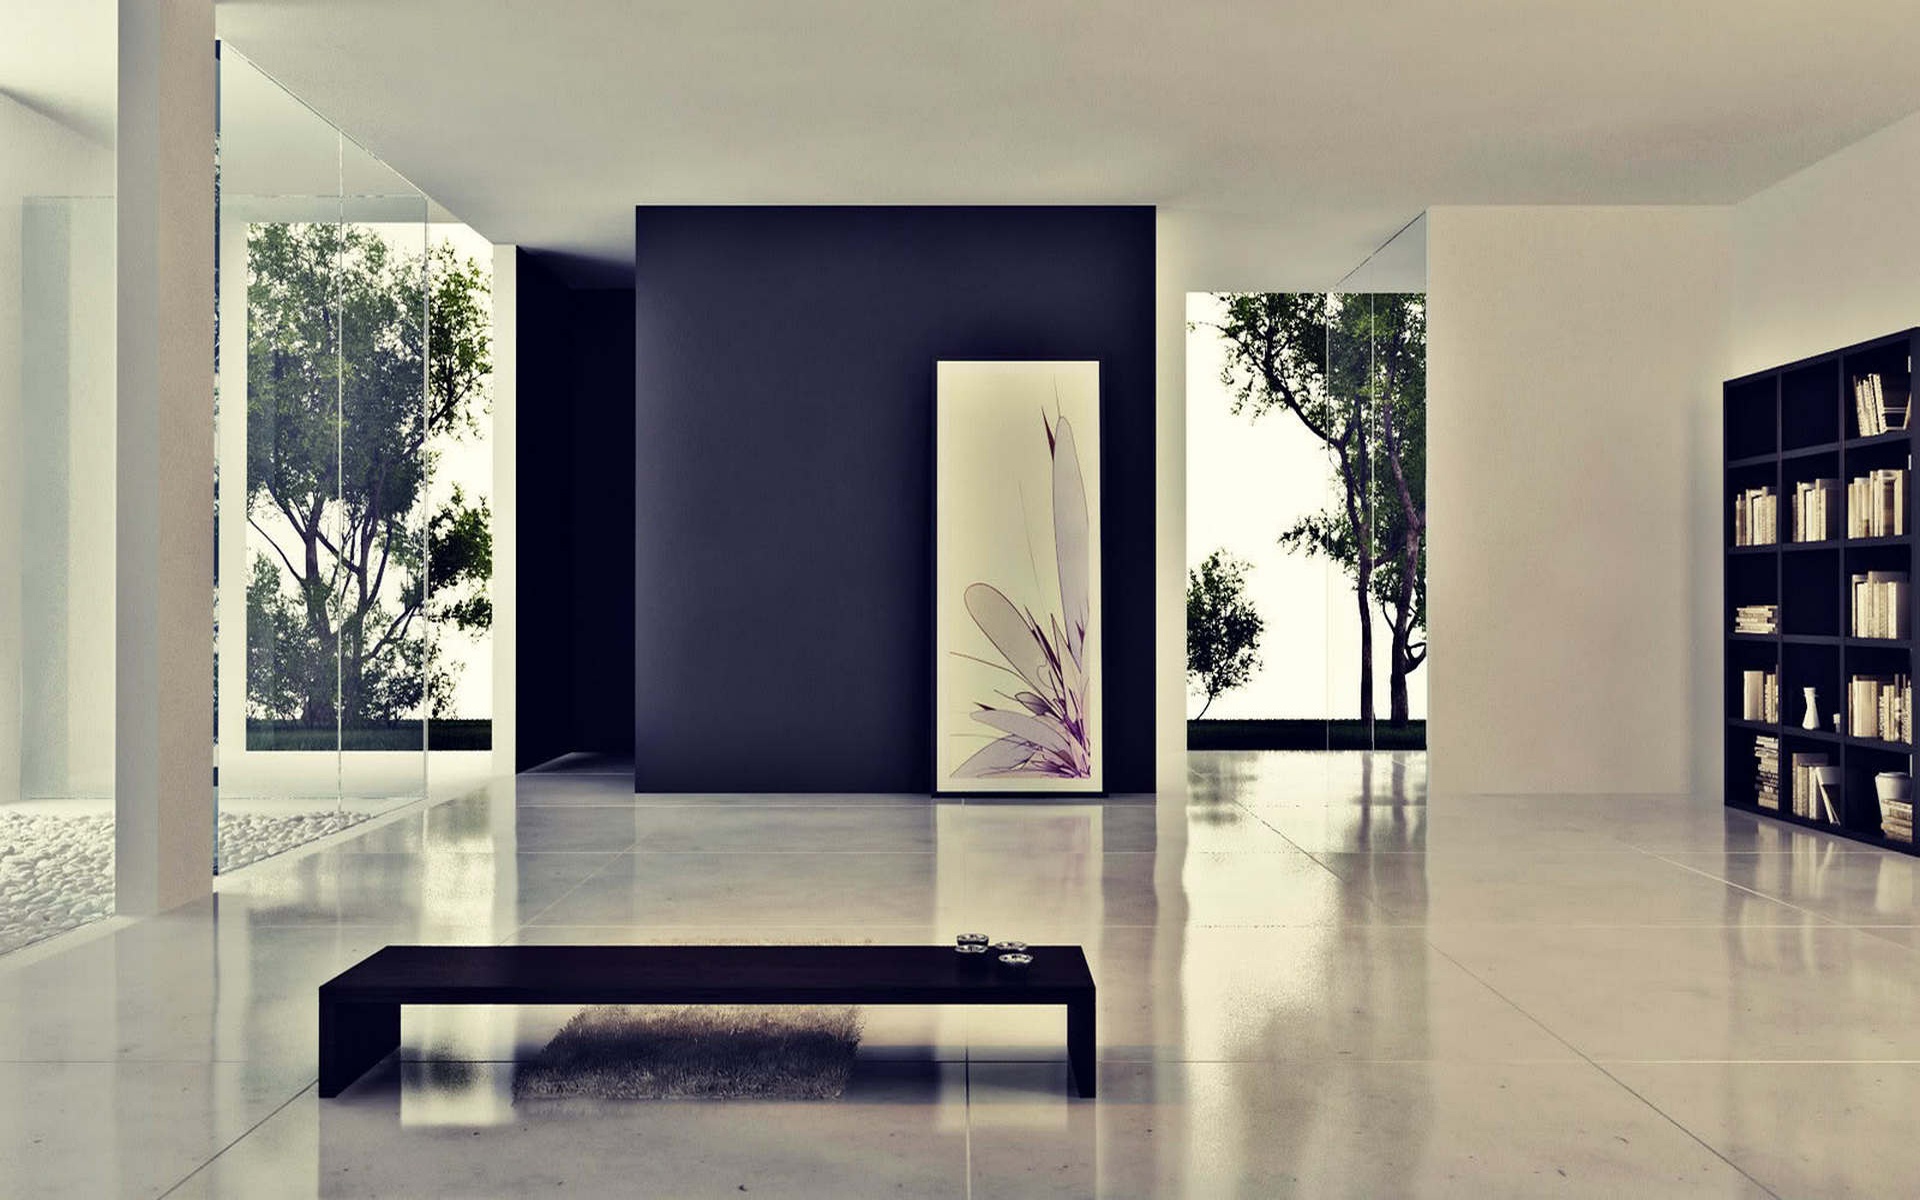 🔥 Free Download Livingroom Modern Interior Home Design Wallpaper Image